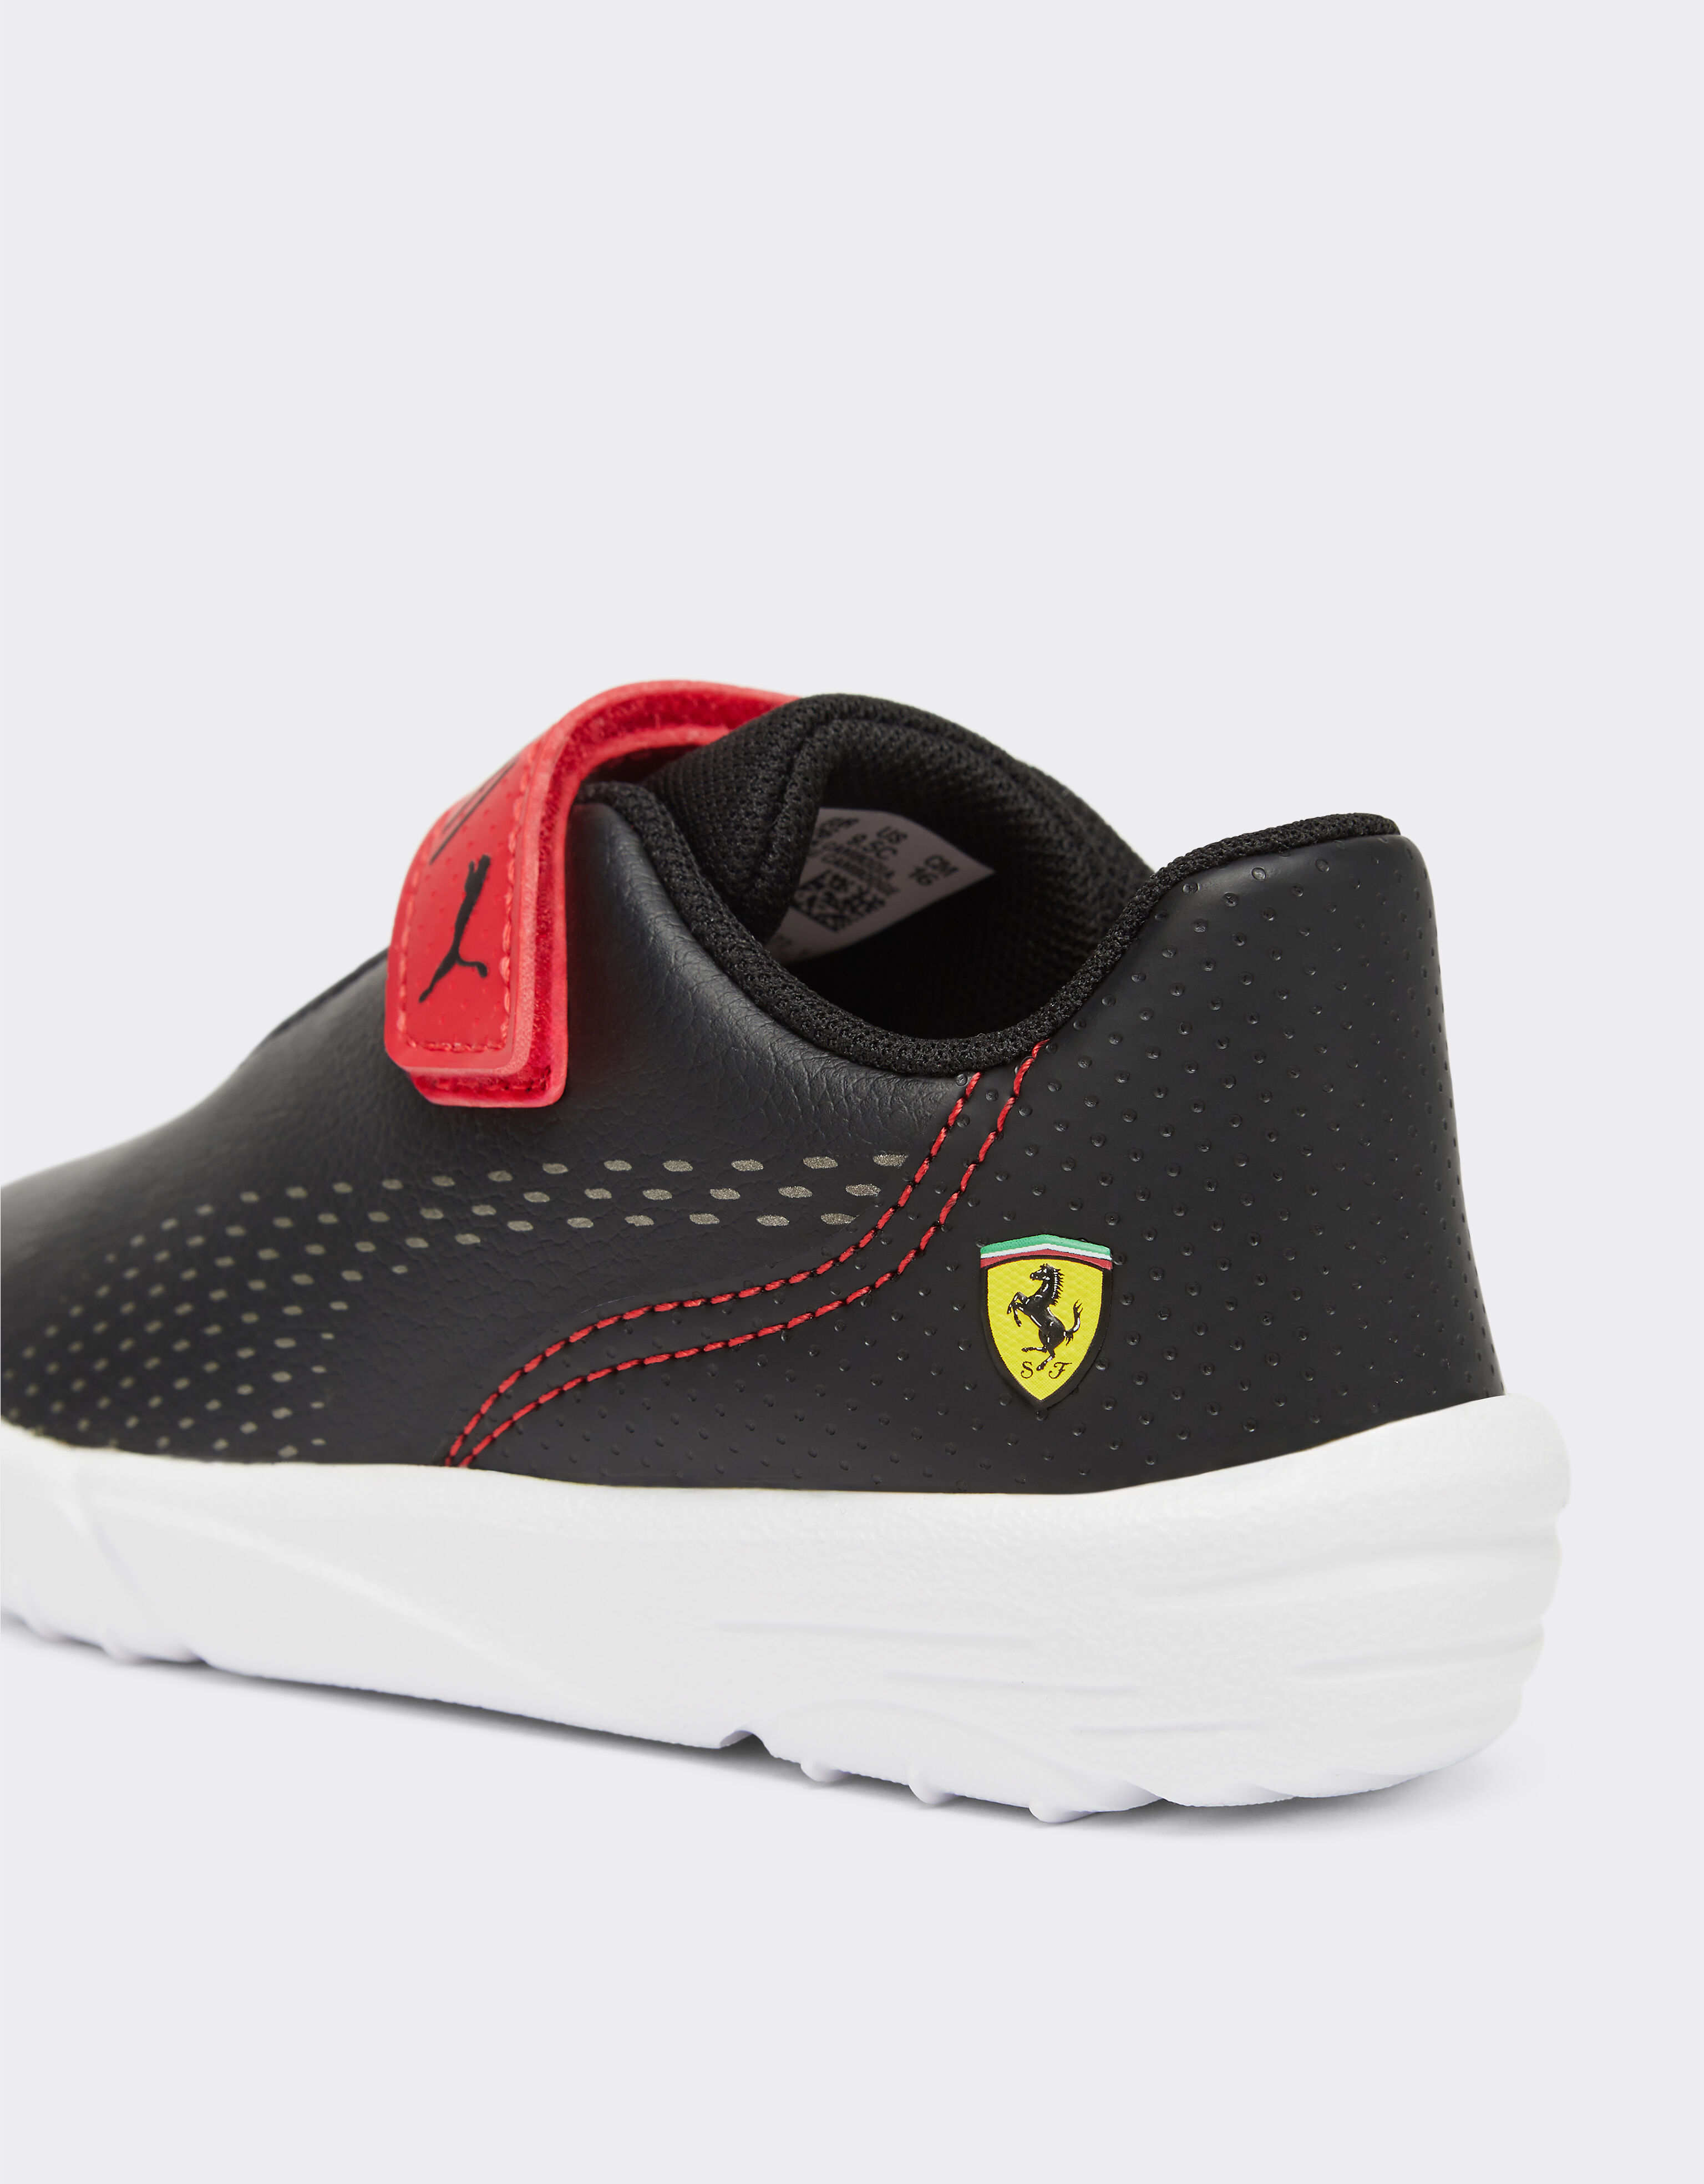 Ferrari Puma 呈现法拉利车队 Drift Cat Decima 学步鞋 黑色 F1119fK